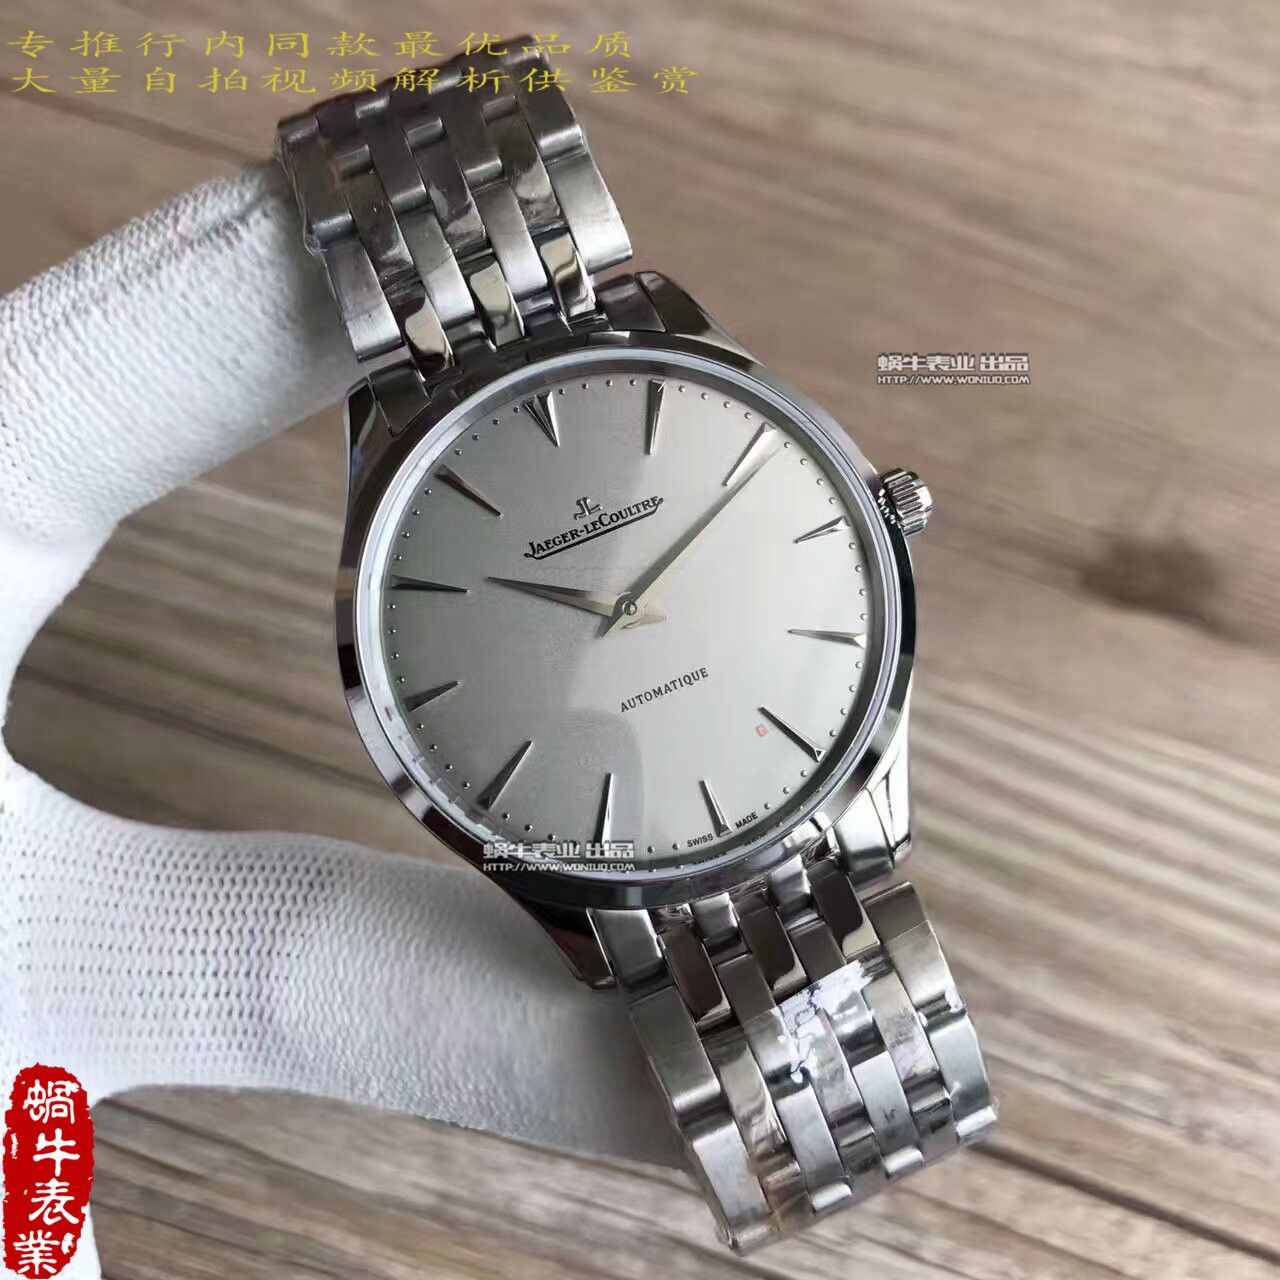 【台湾厂一比一高仿手表】积家超薄大师系列Q1338421腕表 / JJ097